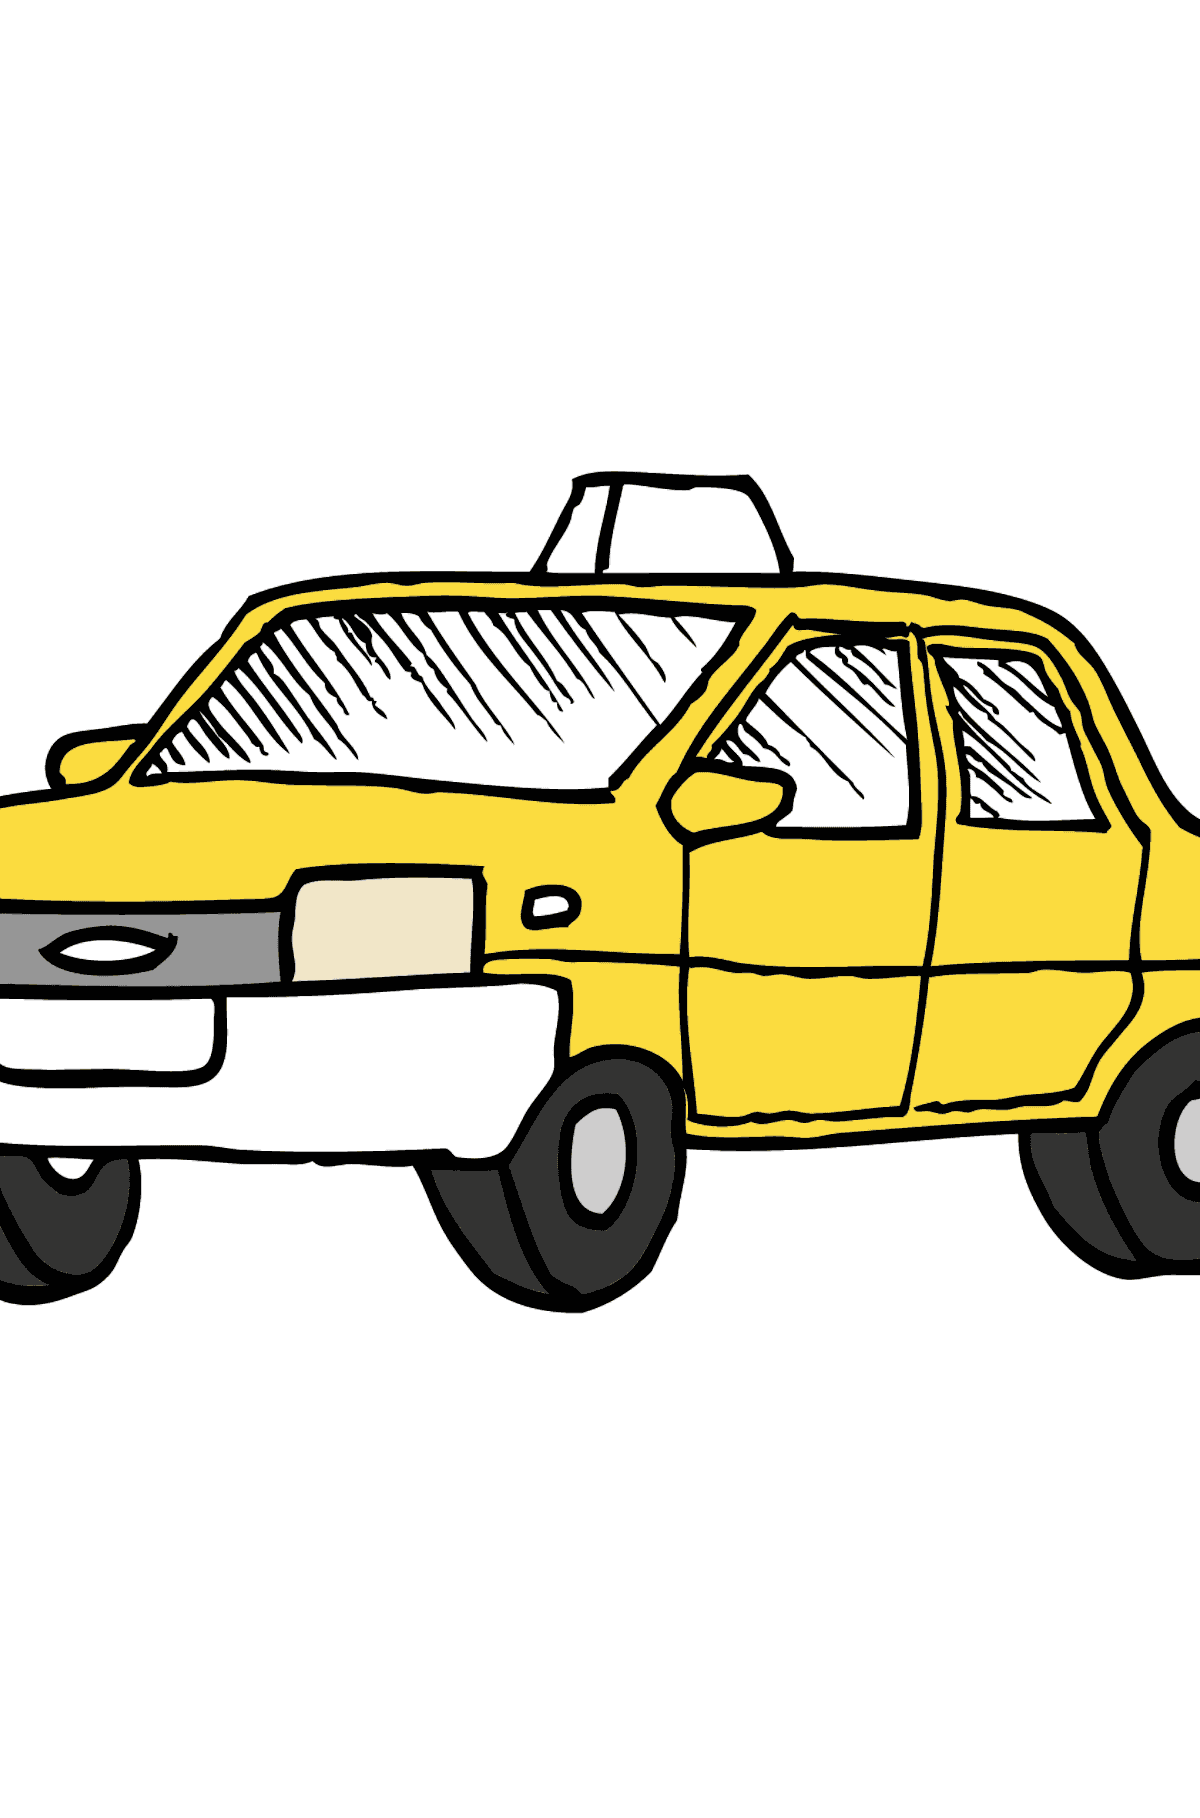 Coloriage - Un taxi jaune - Malvorlagen für Kinder